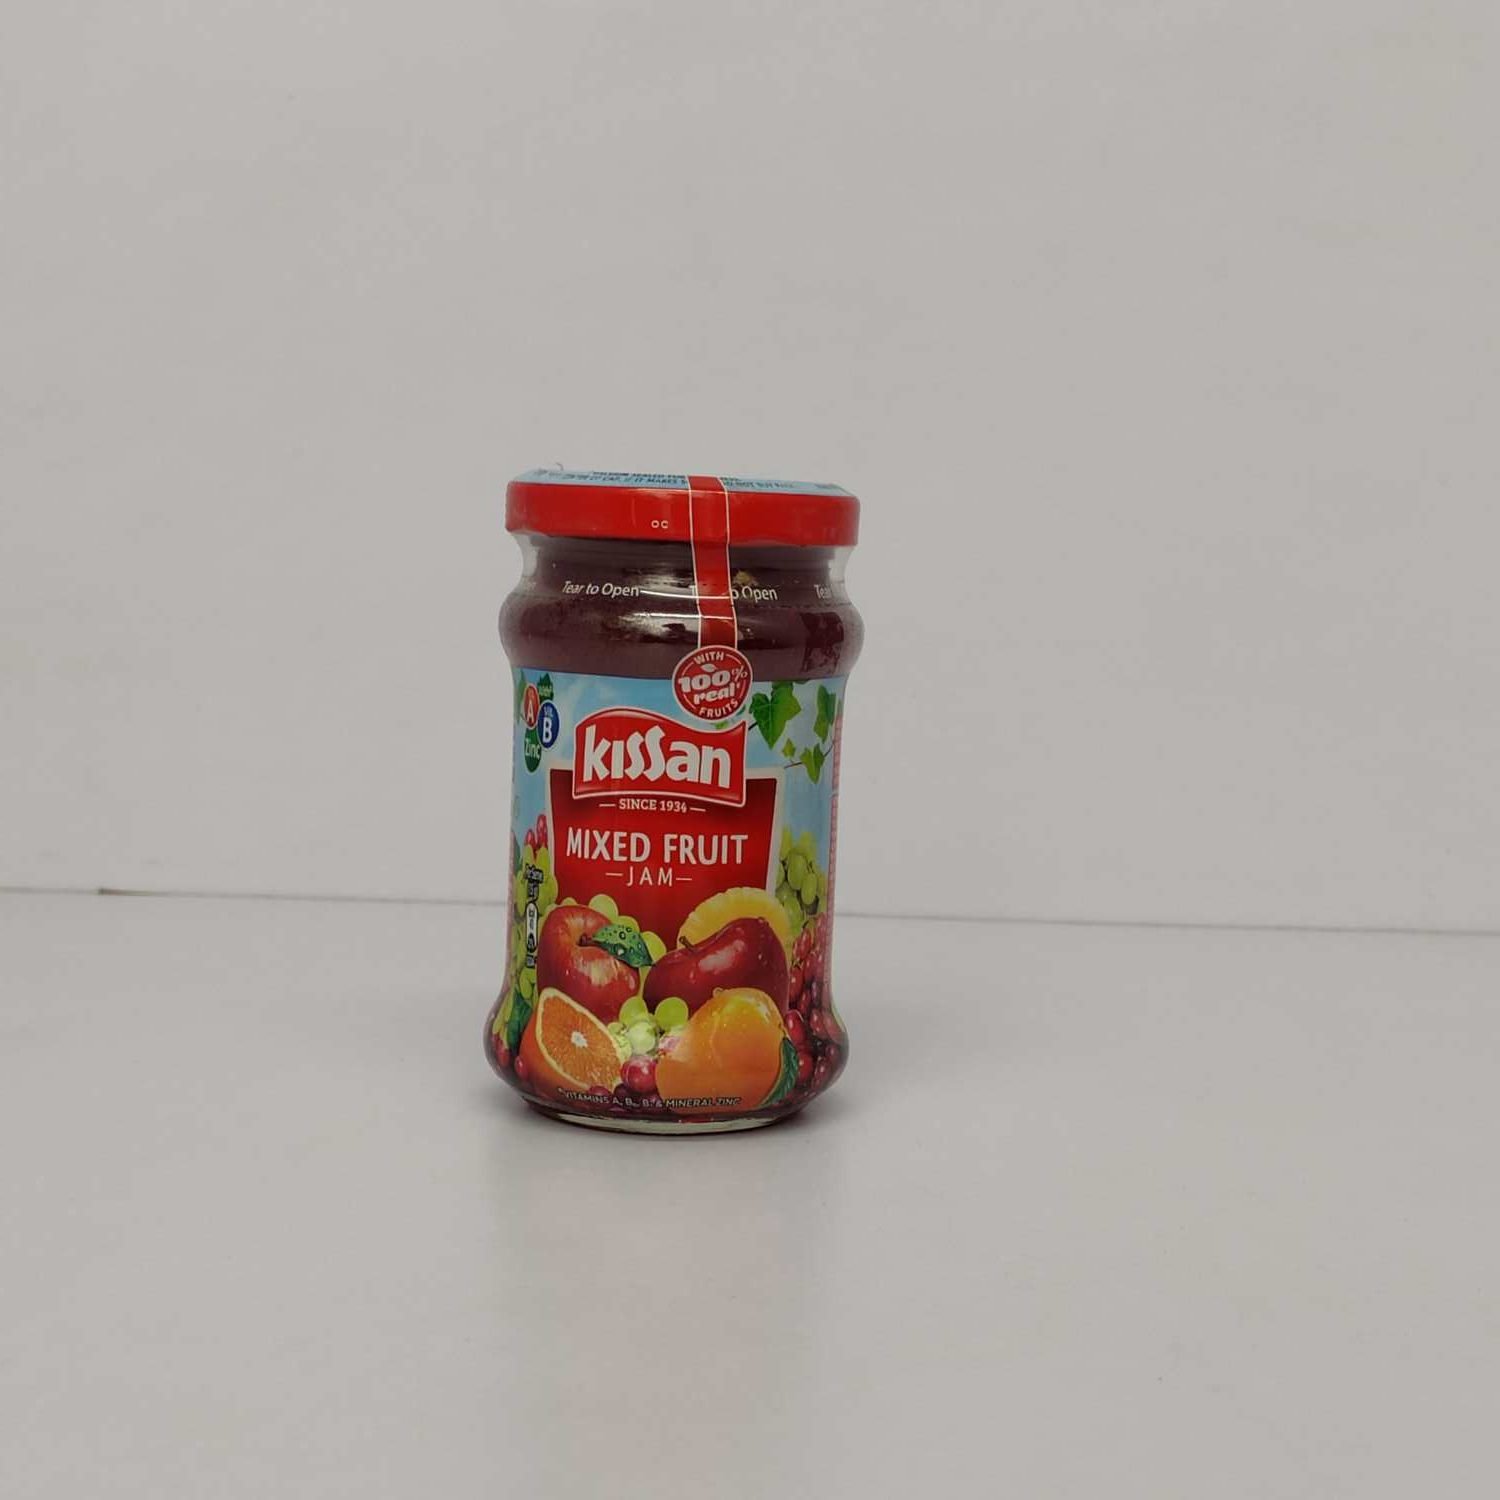 Kissan mixed fruit jam, 200 grams